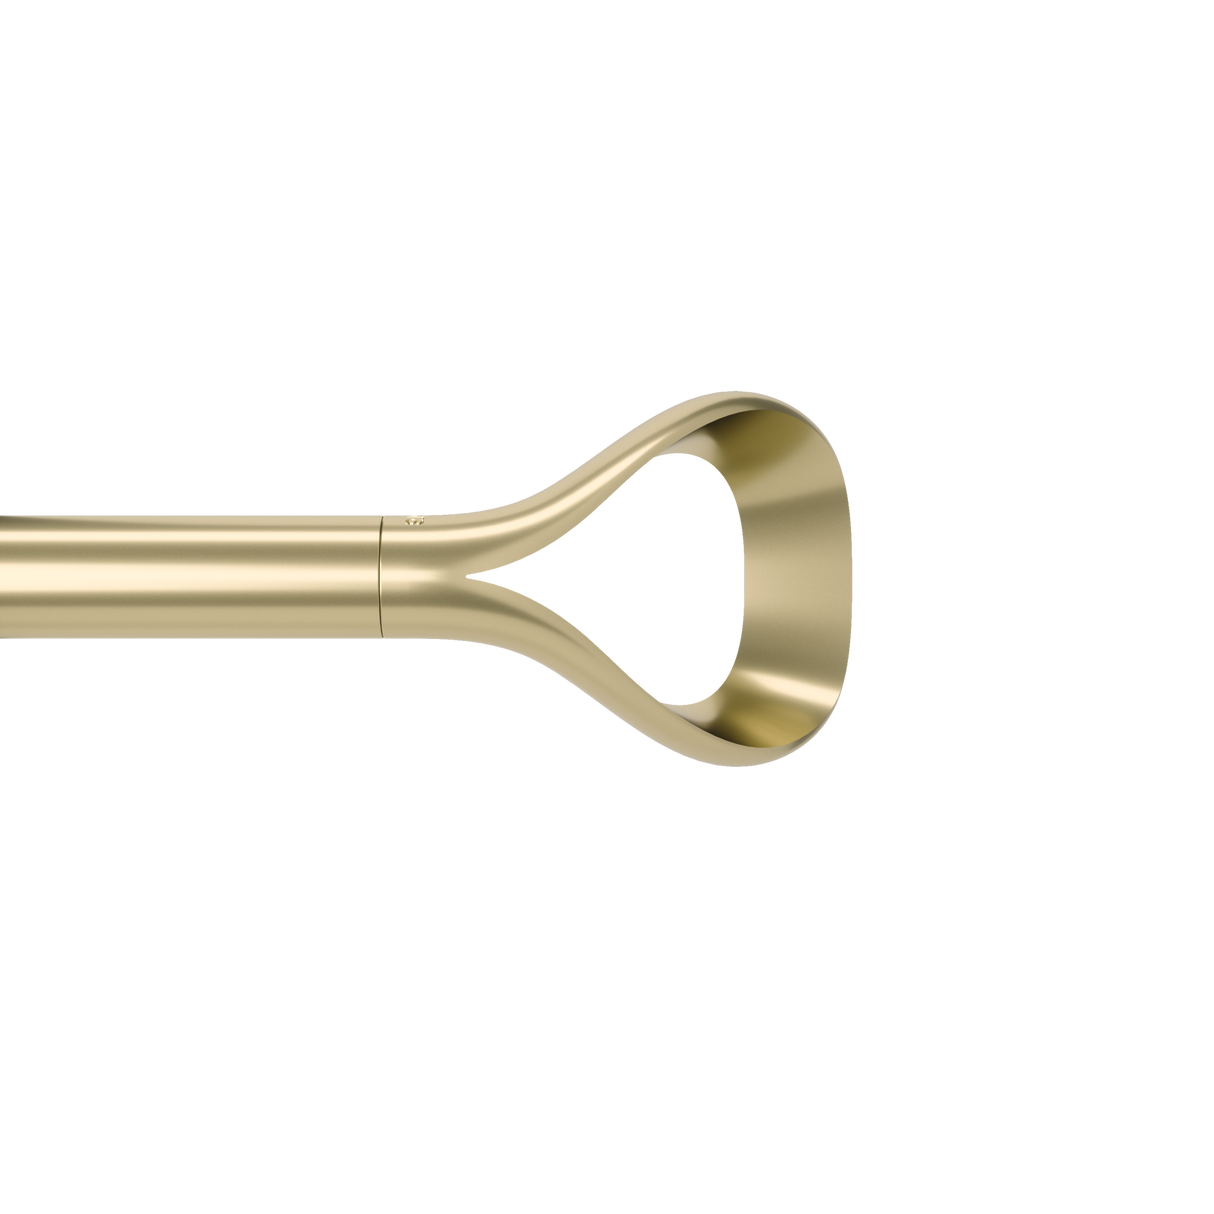 Single Curtain Rods | color: Gold | size: 42-120" (107-305 cm) | diameter: 1" (2.5 cm)